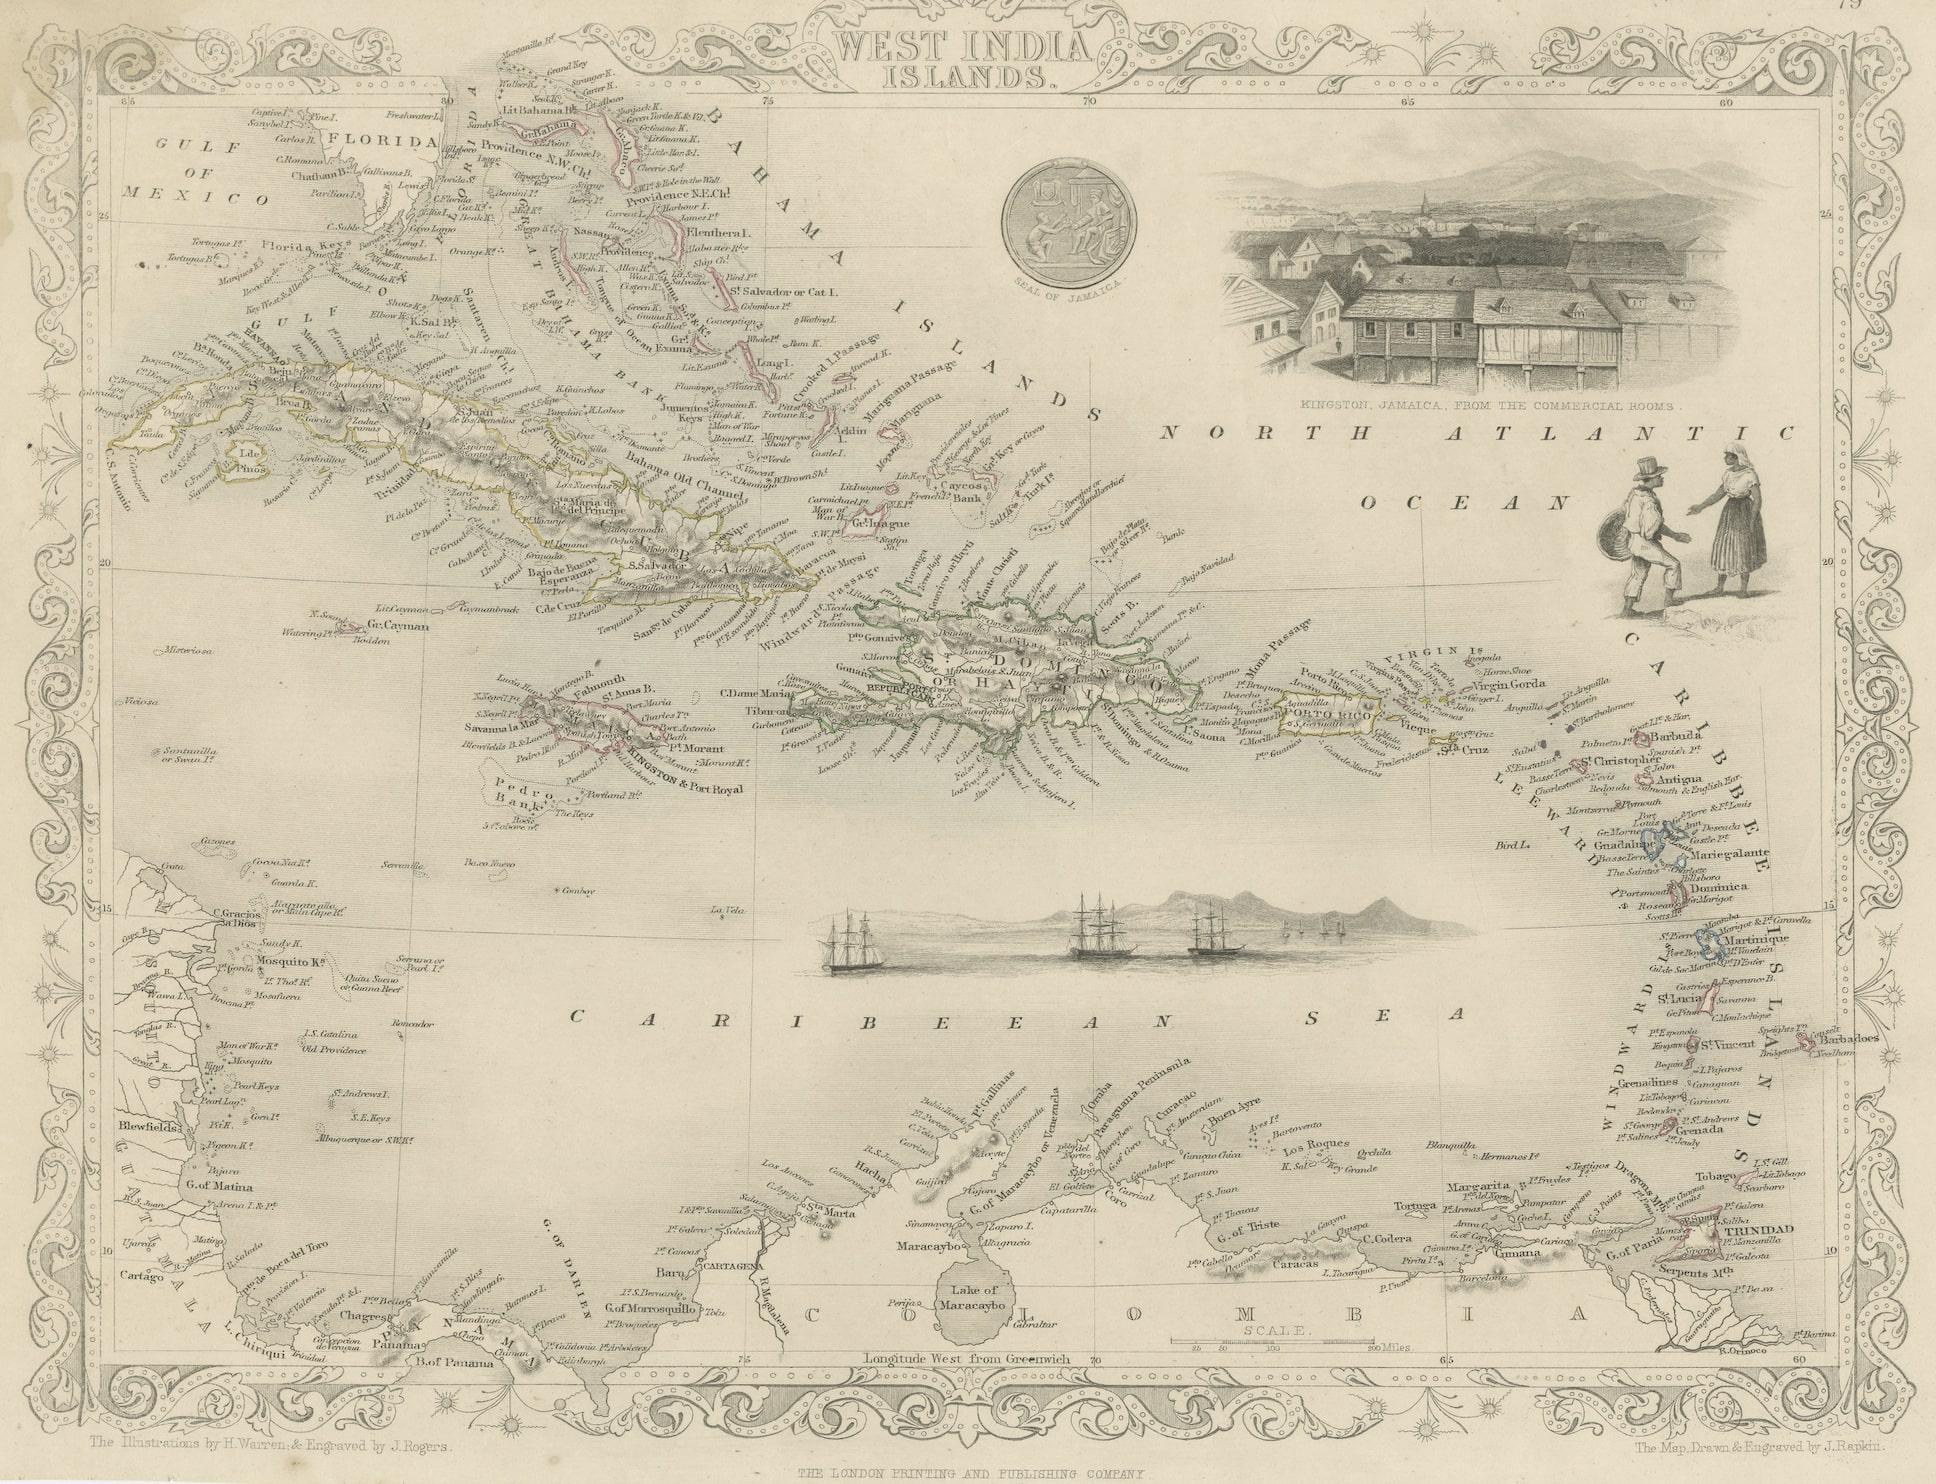 La carte des Antilles de 1851 de John Tallis est un exemple frappant de son célèbre travail cartographique. Avec des détails méticuleux et des embellissements artistiques, cette carte offre une vue d'ensemble de la région des Caraïbes au milieu du